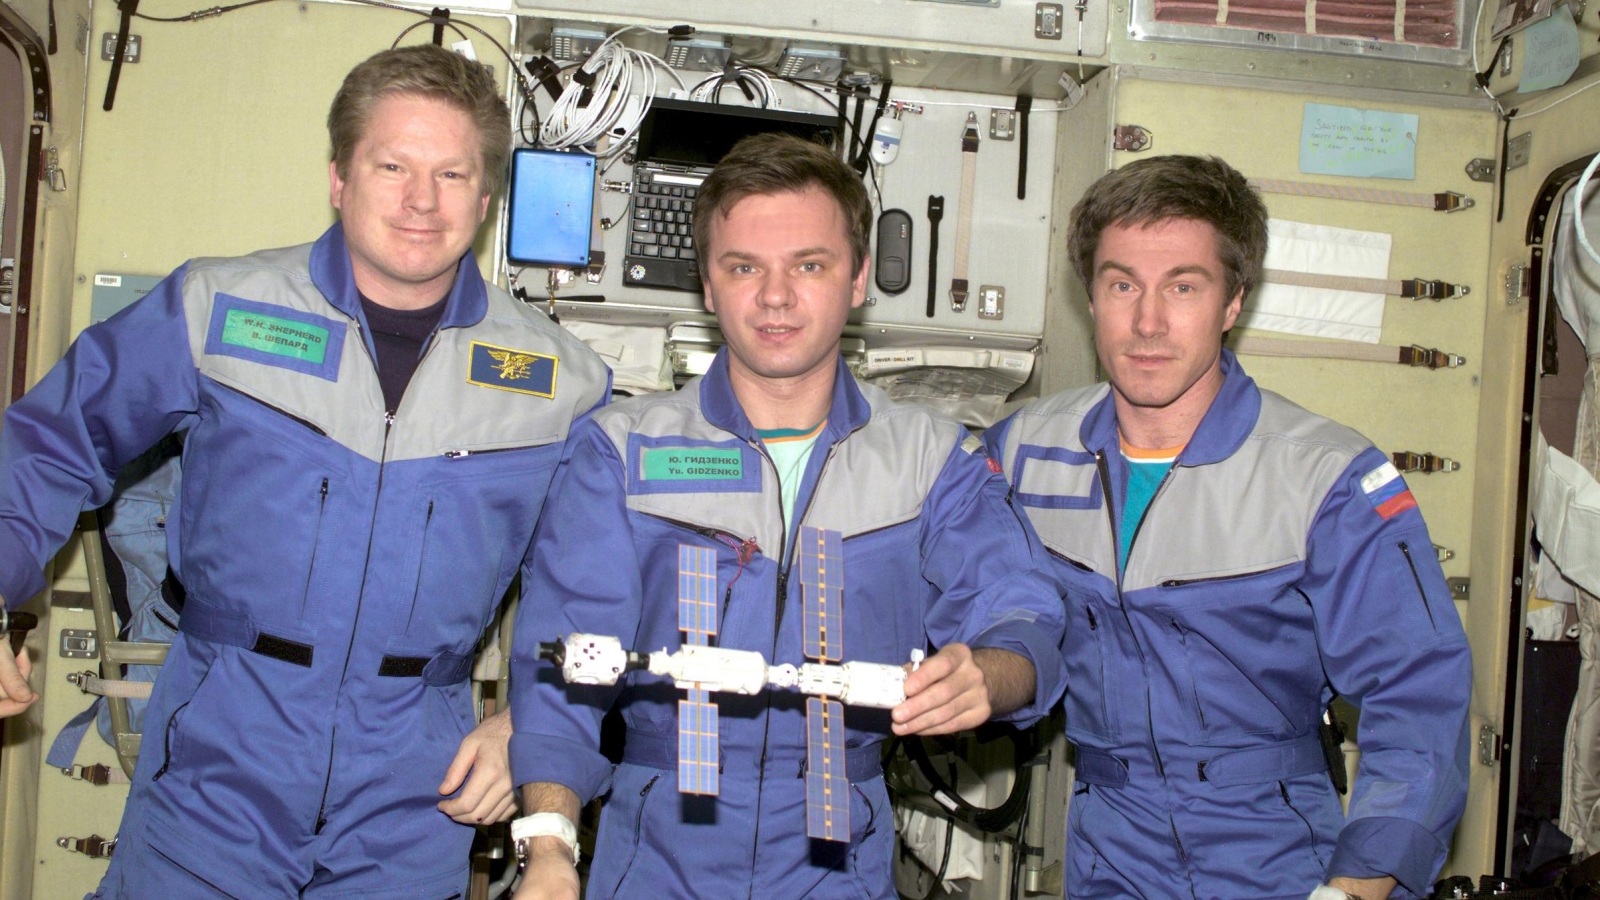 أفراد البعثة الأولى لمحطة الفضاء الدولية وهم من اليسار إلى اليمين